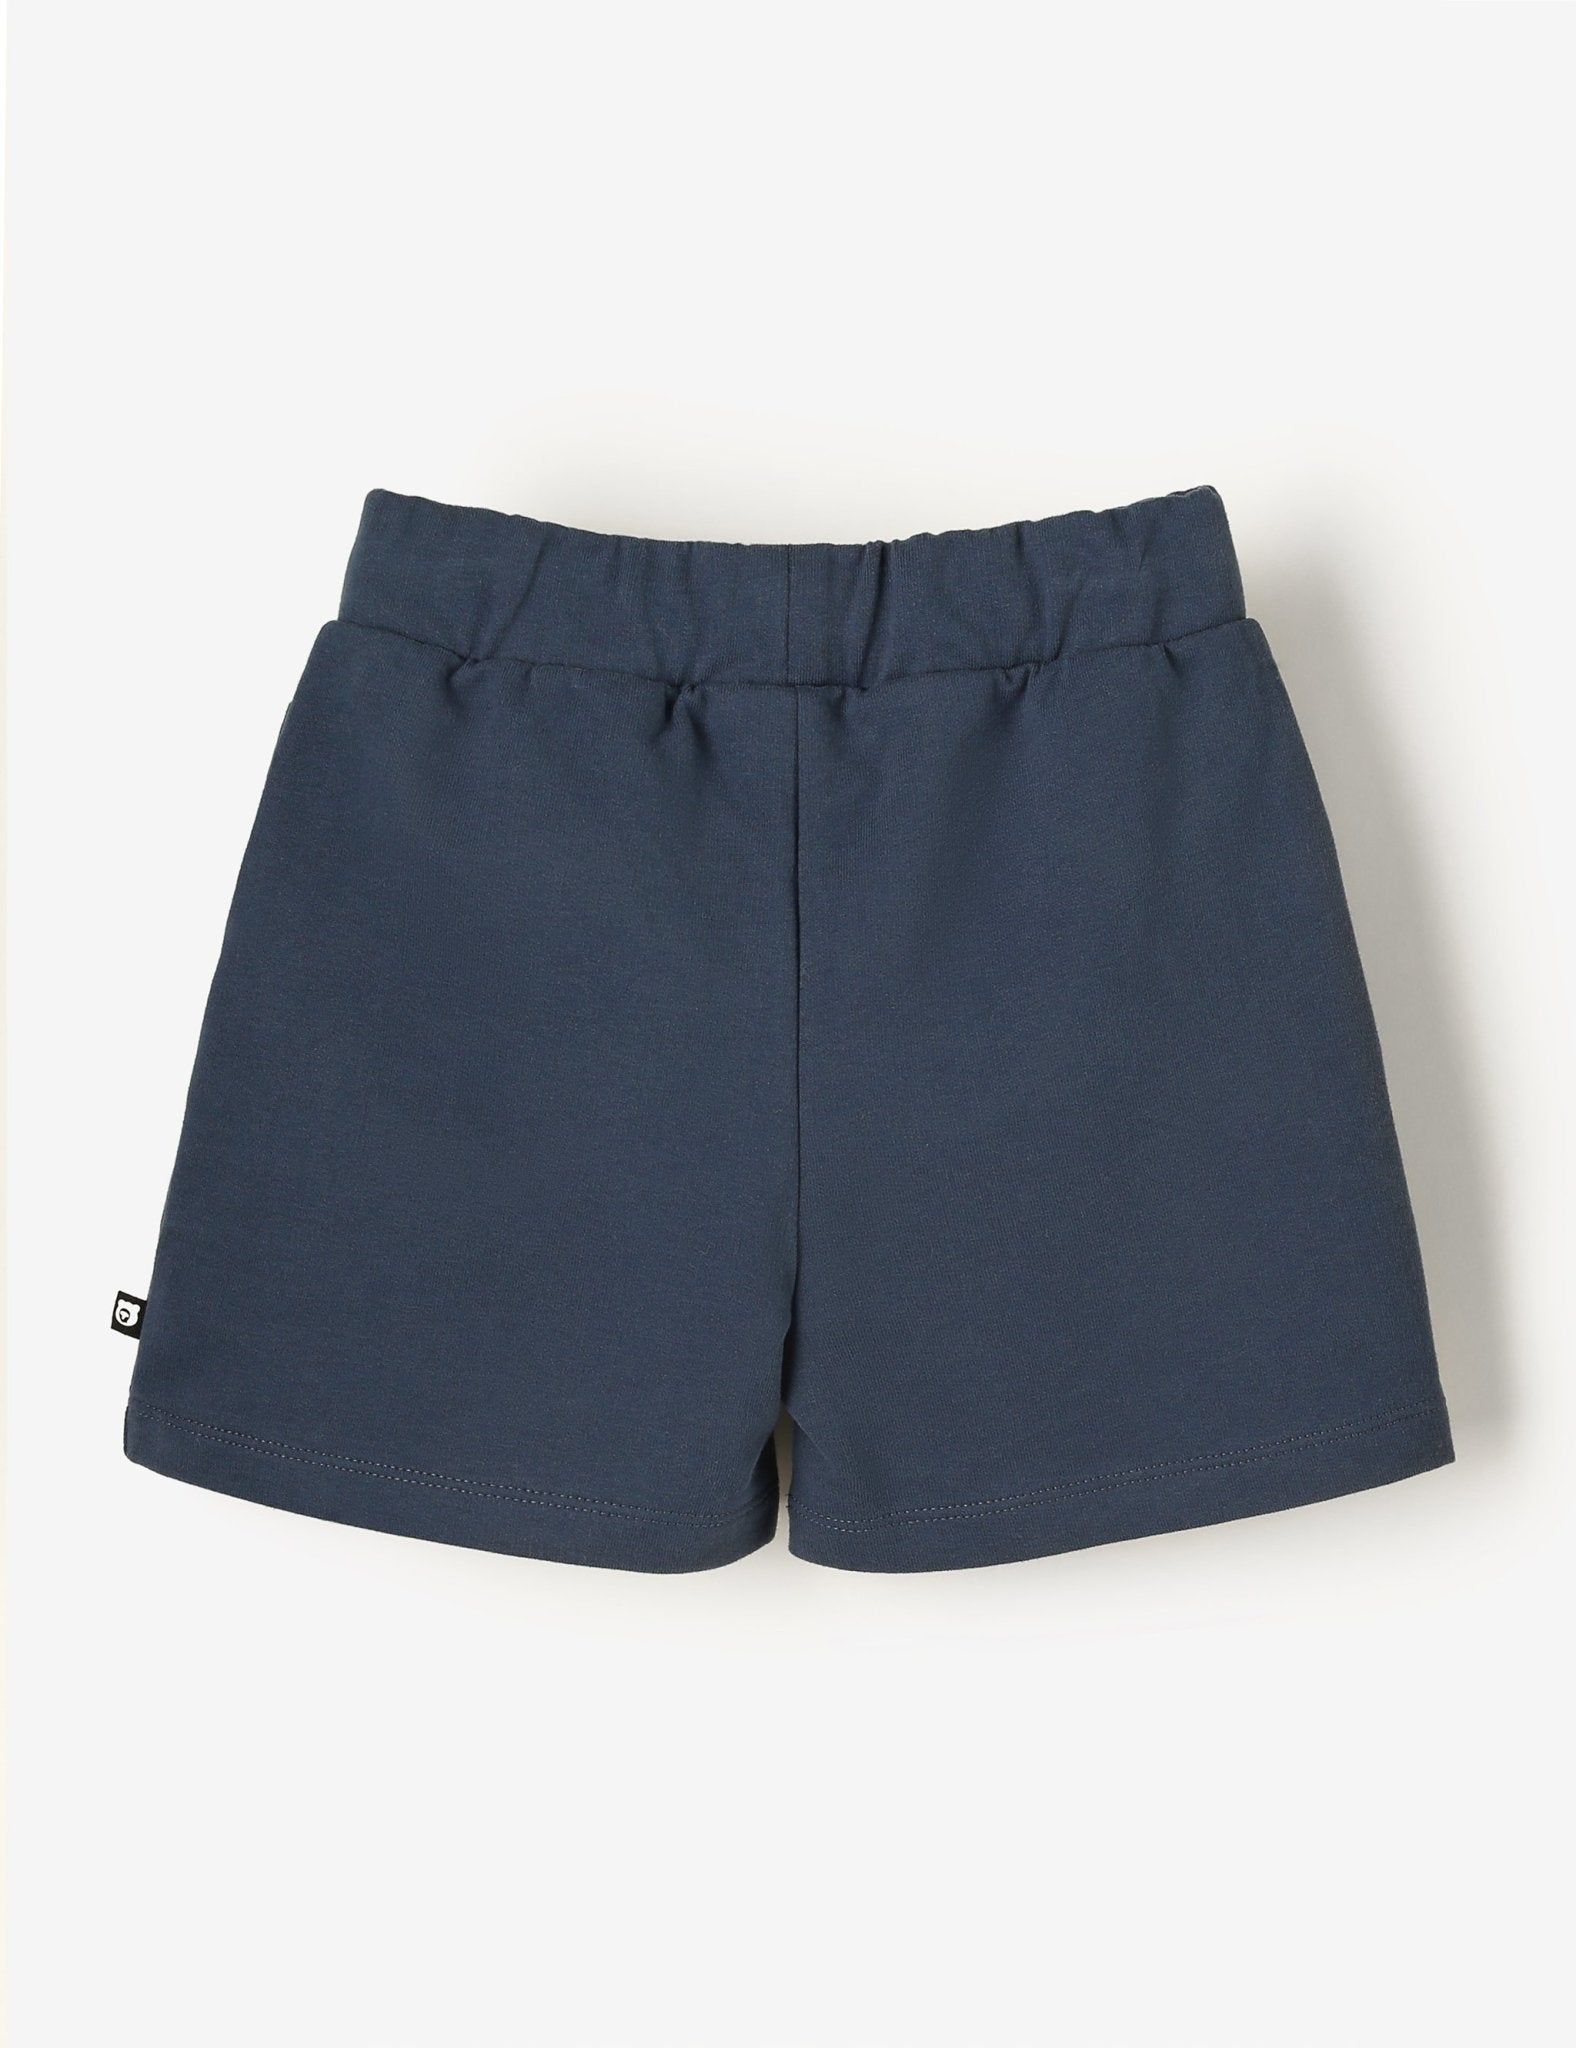 Bermuda Shorts - Navy Blue - The QT